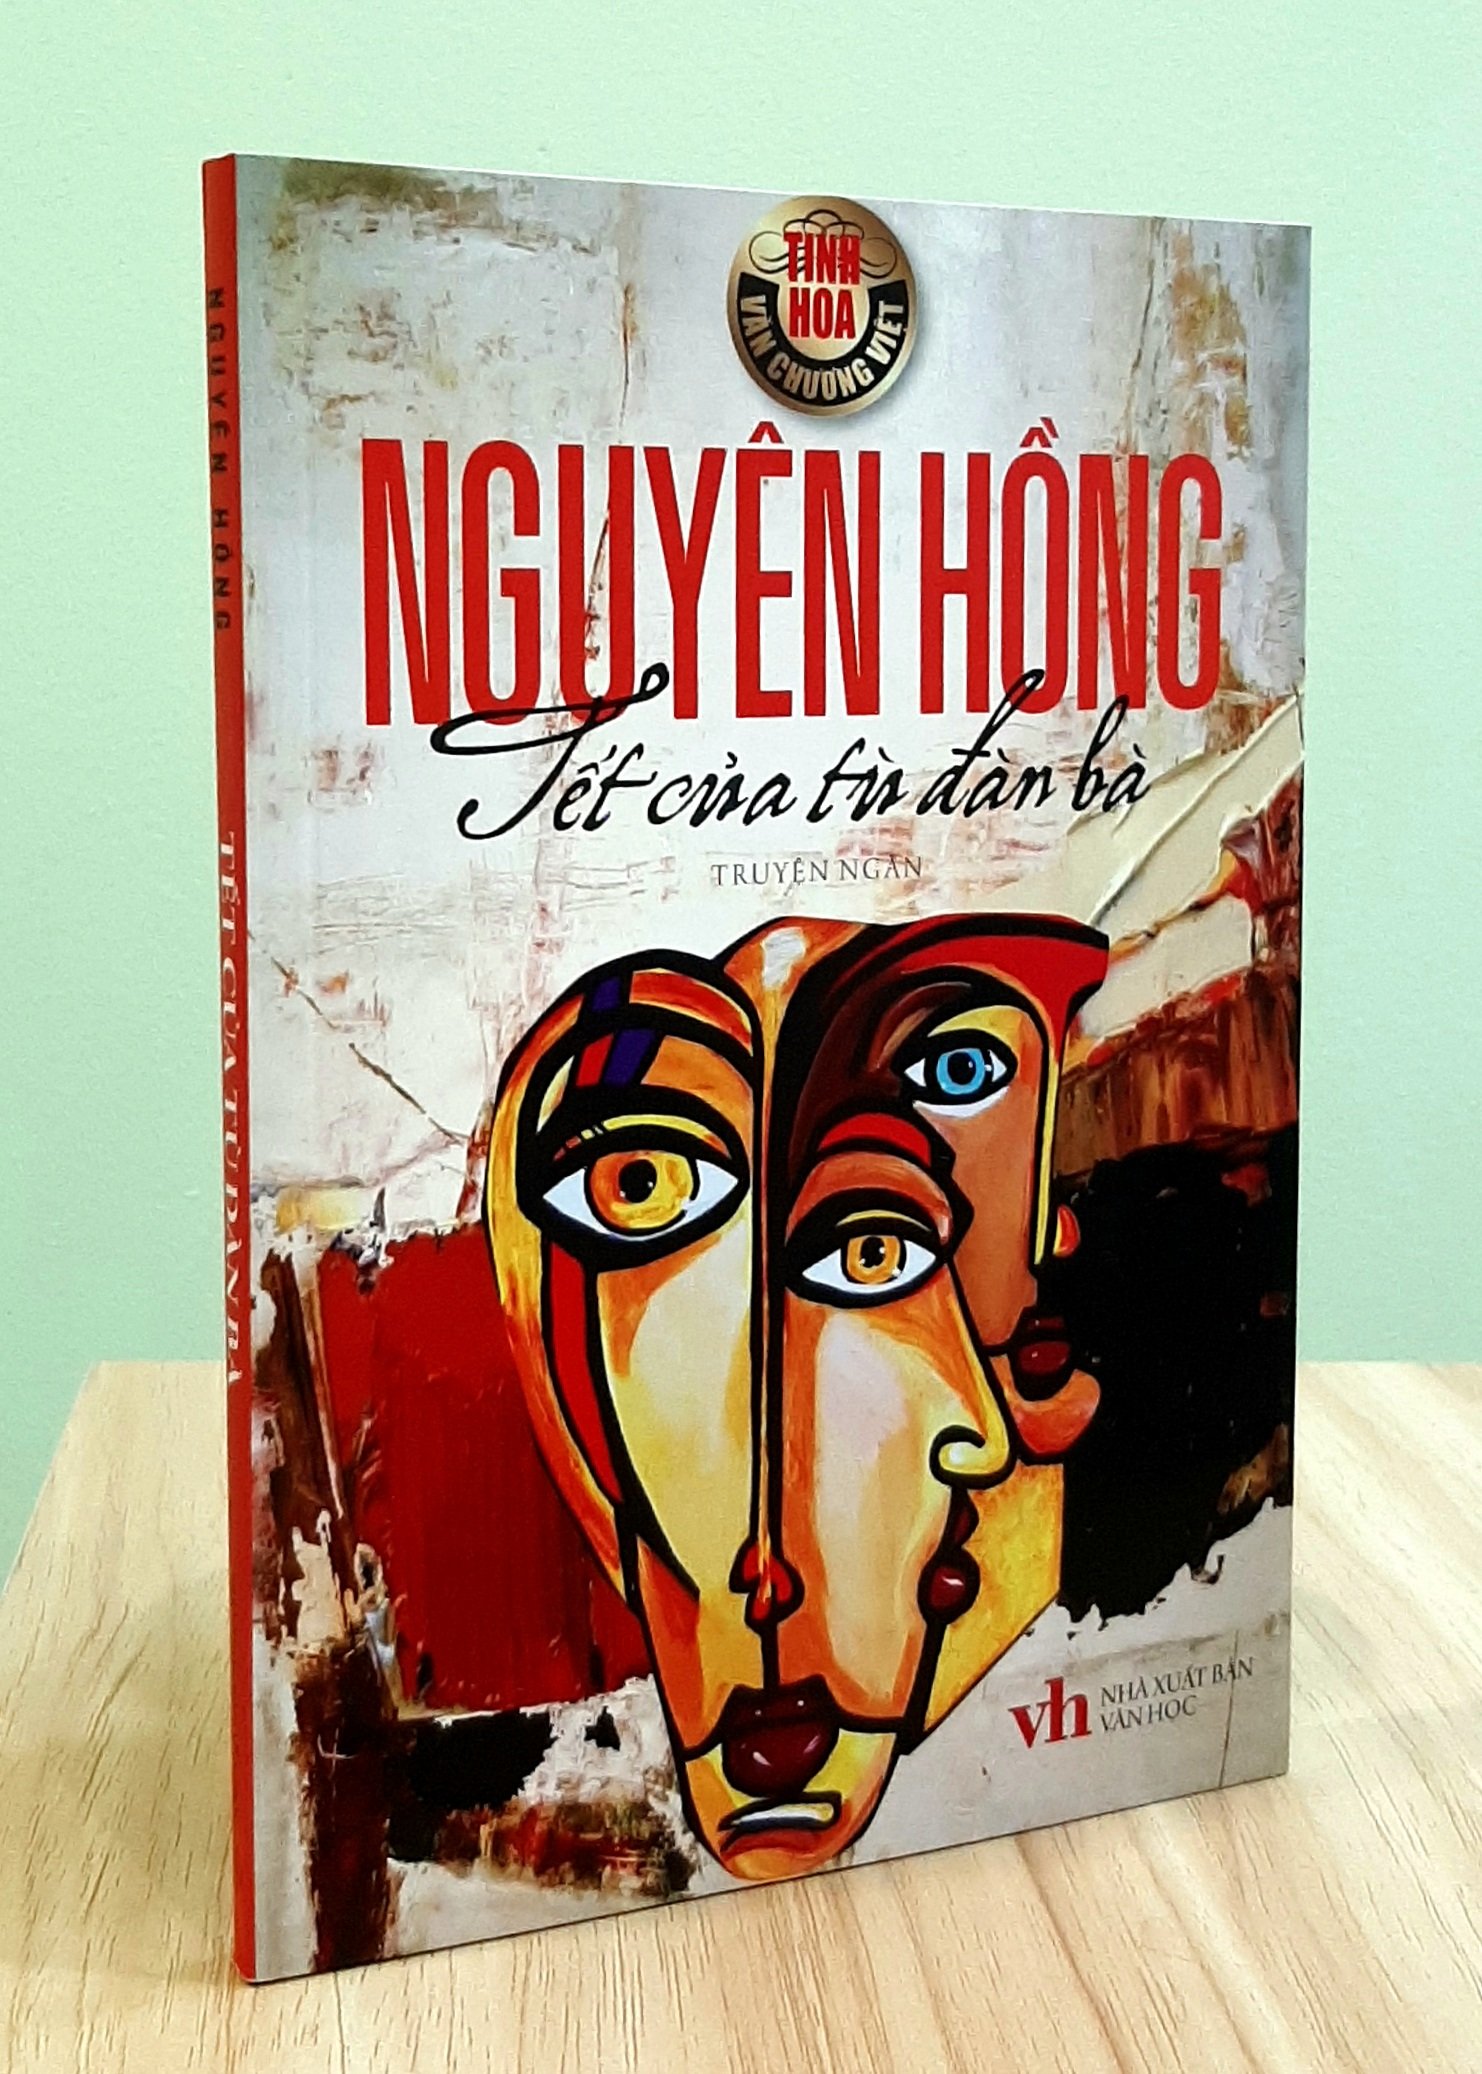 Tết của tù đàn bà - Nguyên Hồng - Danh tác văn học Việt Nam